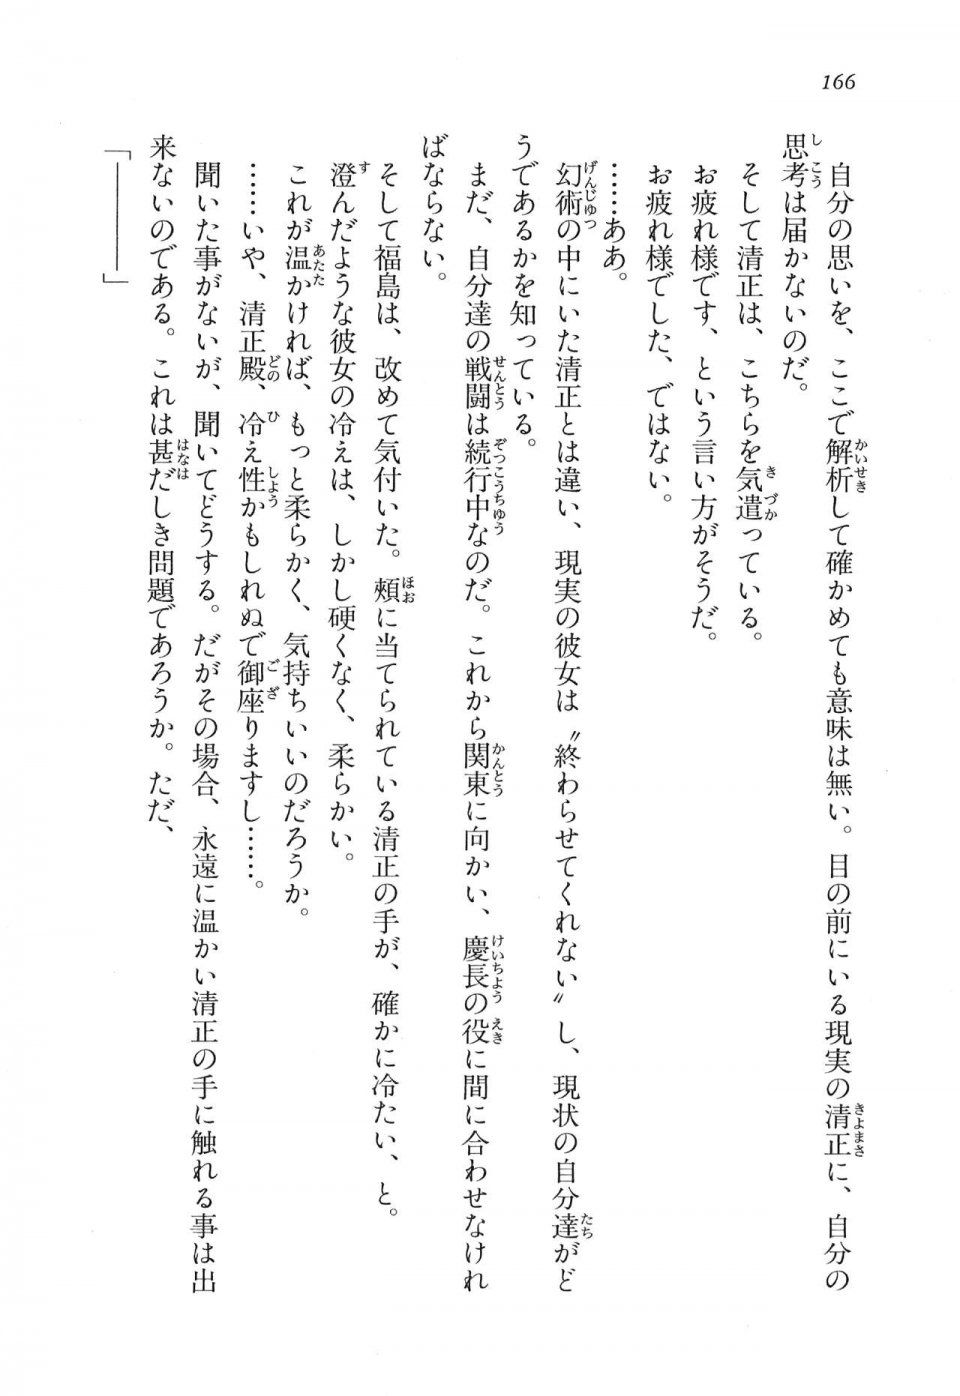 Kyoukai Senjou no Horizon LN Vol 16(7A) - Photo #166